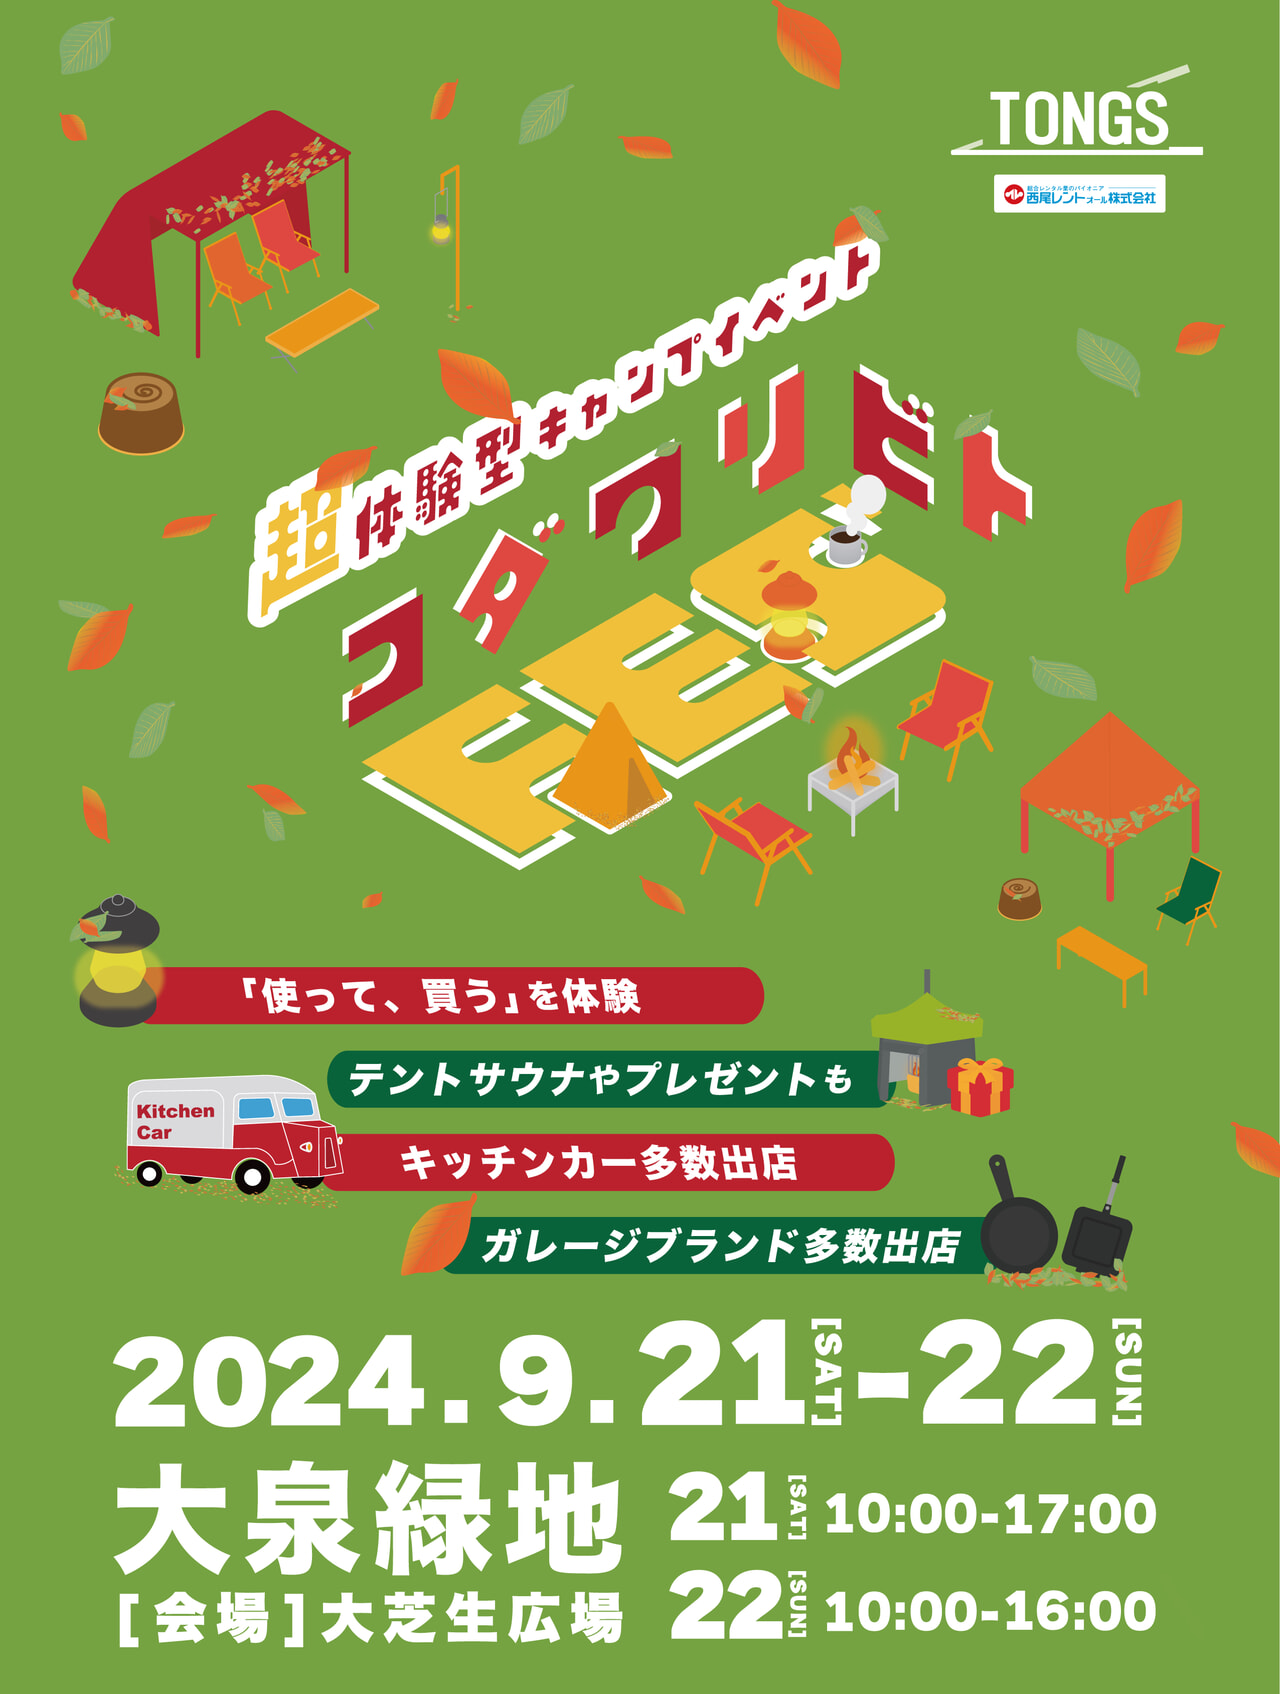 ギアを試せるキャンプイベント「コダワリビトFES'」第三回が9月21日、22日に大阪府堺市で開催決定